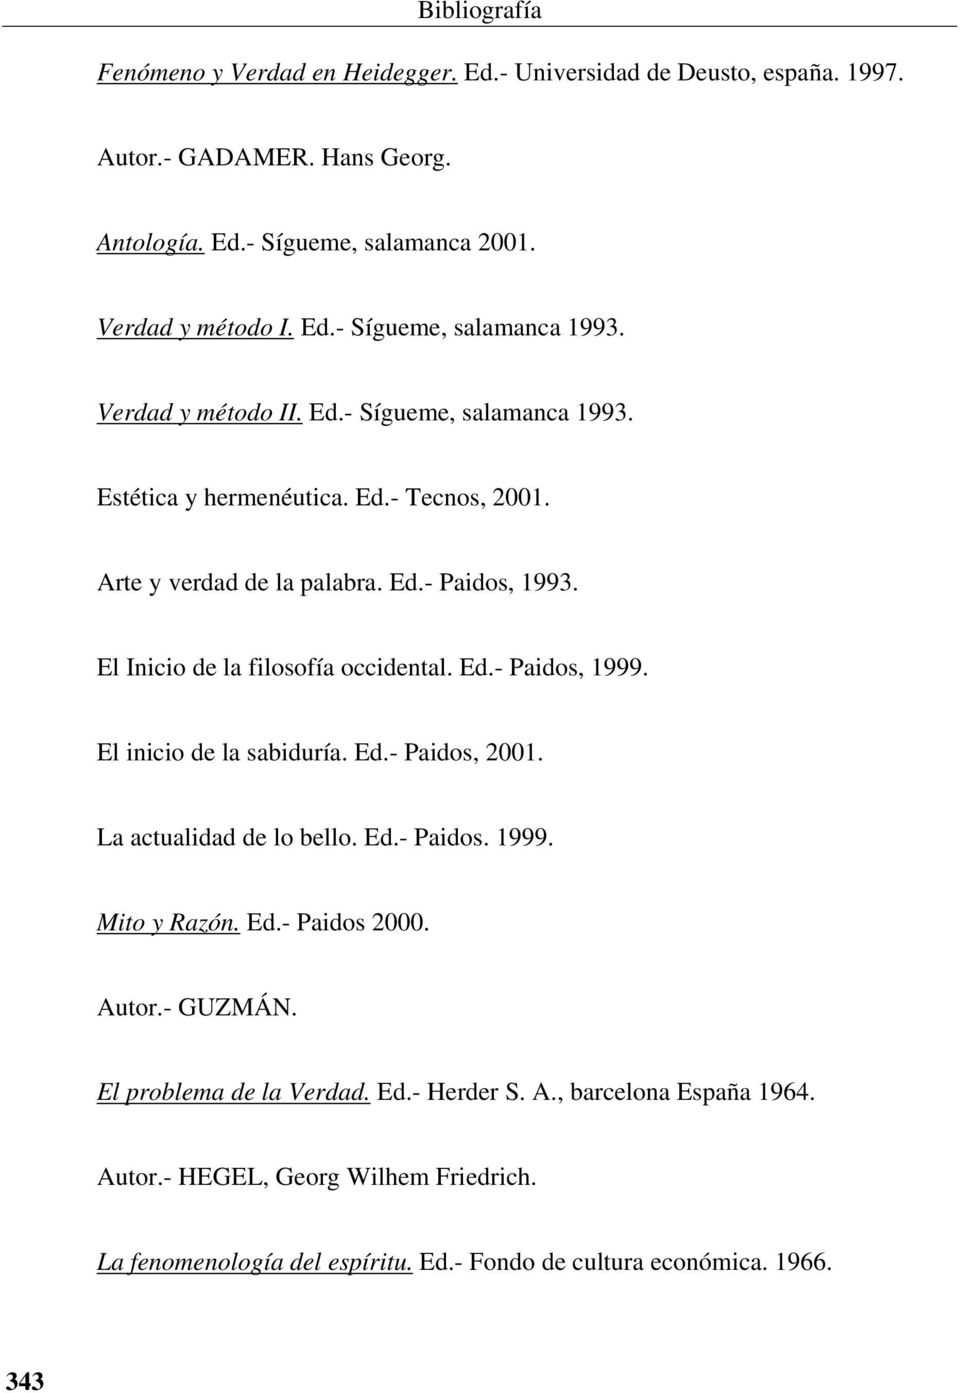 Ed.- Paidos, 1999. El inicio de la sabiduría. Ed.- Paidos, 2001. La actualidad de lo bello. Ed.- Paidos. 1999. Mito y Razón. Ed.- Paidos 2000. Autor.- GUZMÁN.